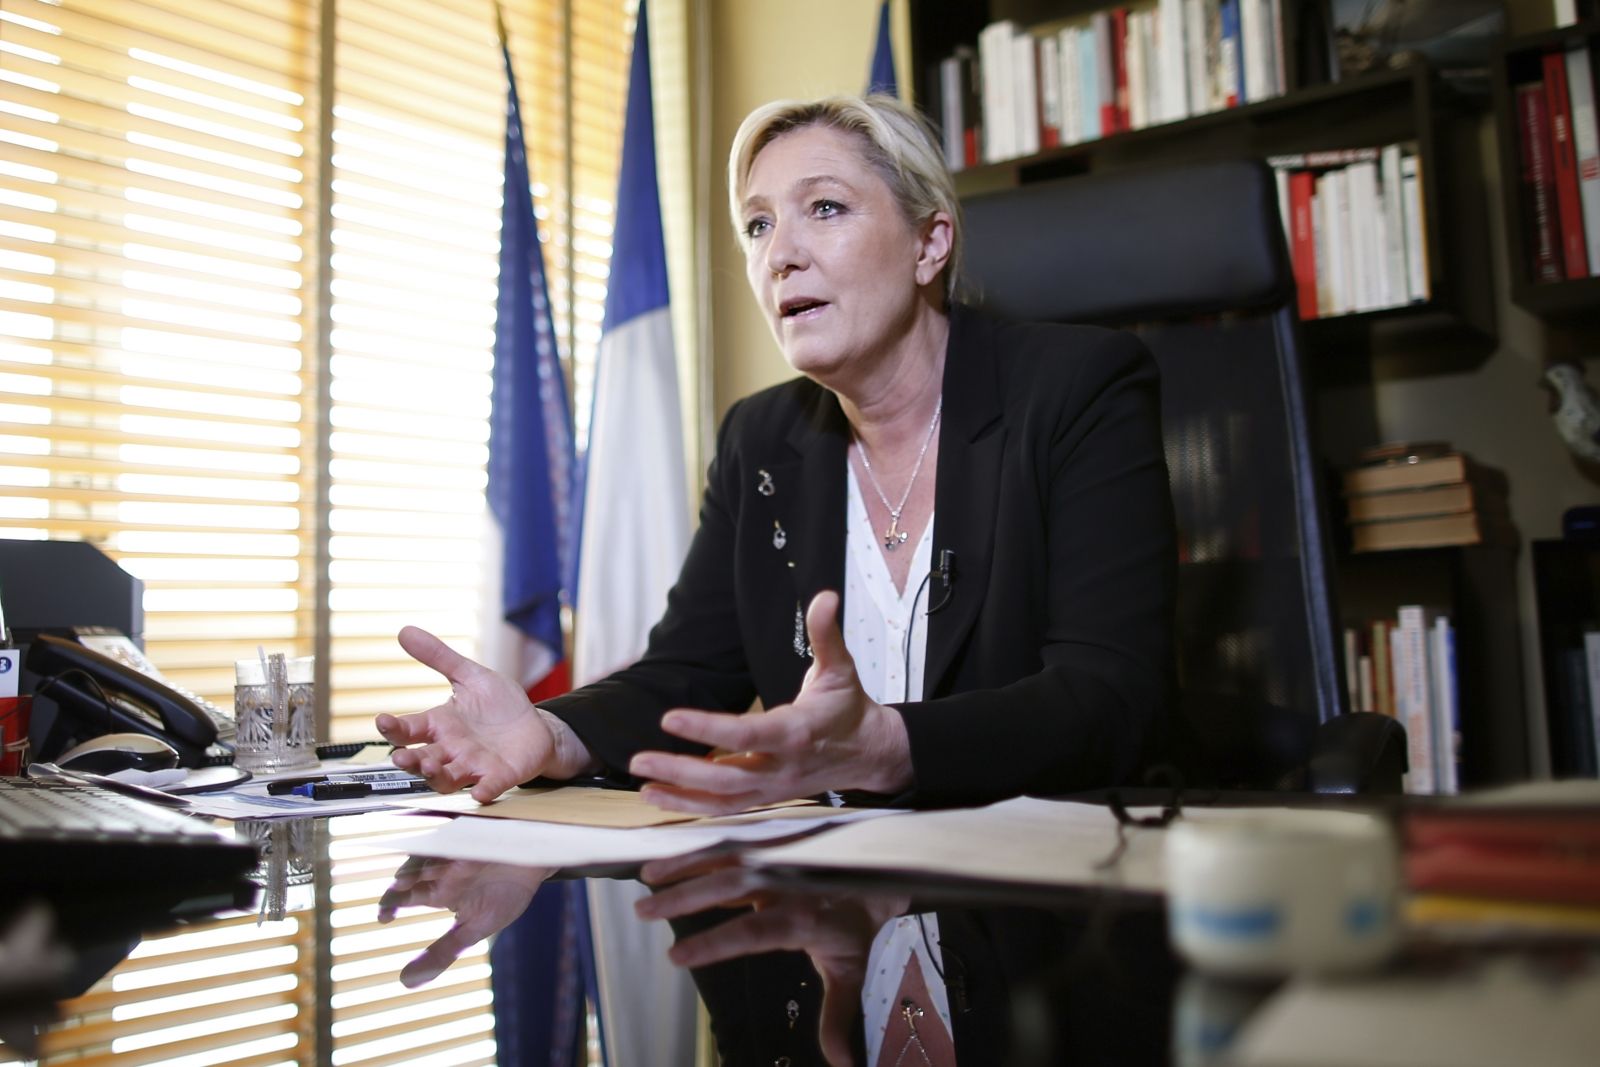 Marine Le Pen on economic migrants